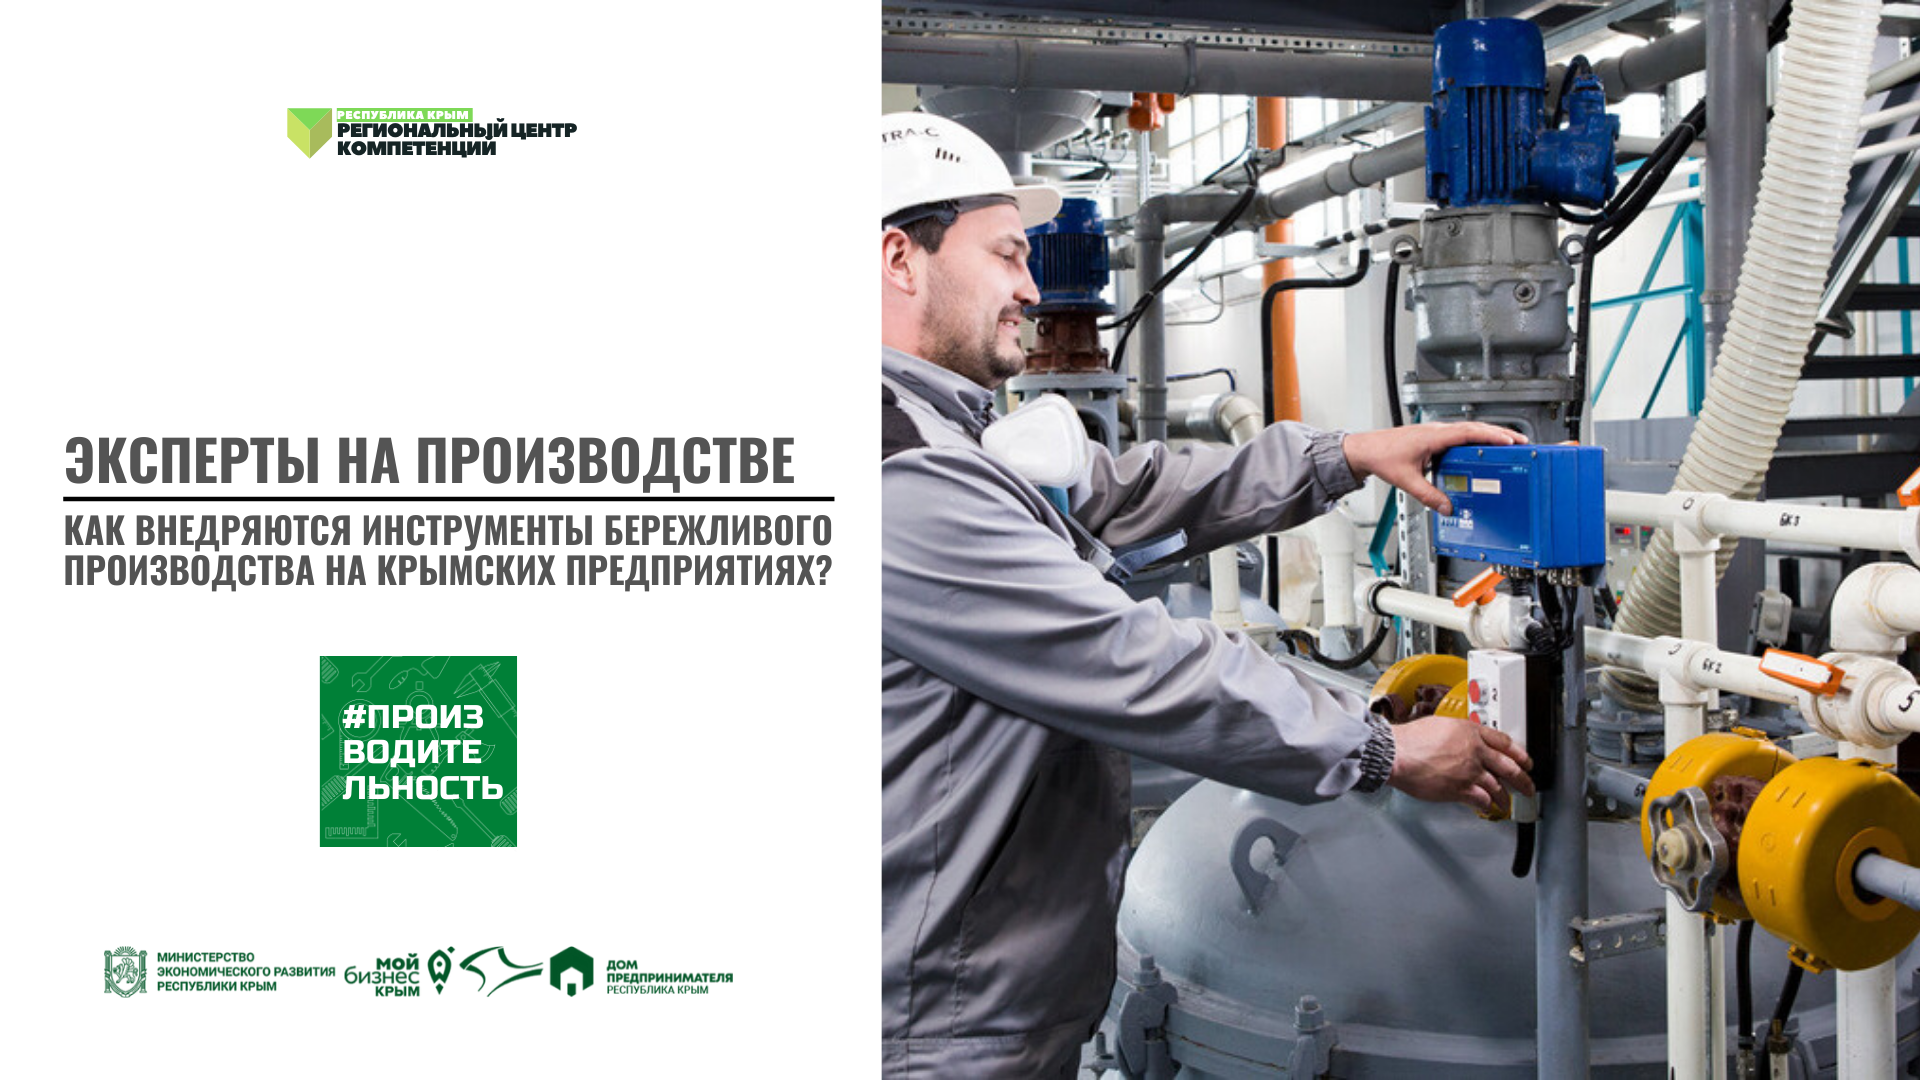 Эксперты на производстве. Как внедряются инструменты бережливого производства на крымских предприятиях?